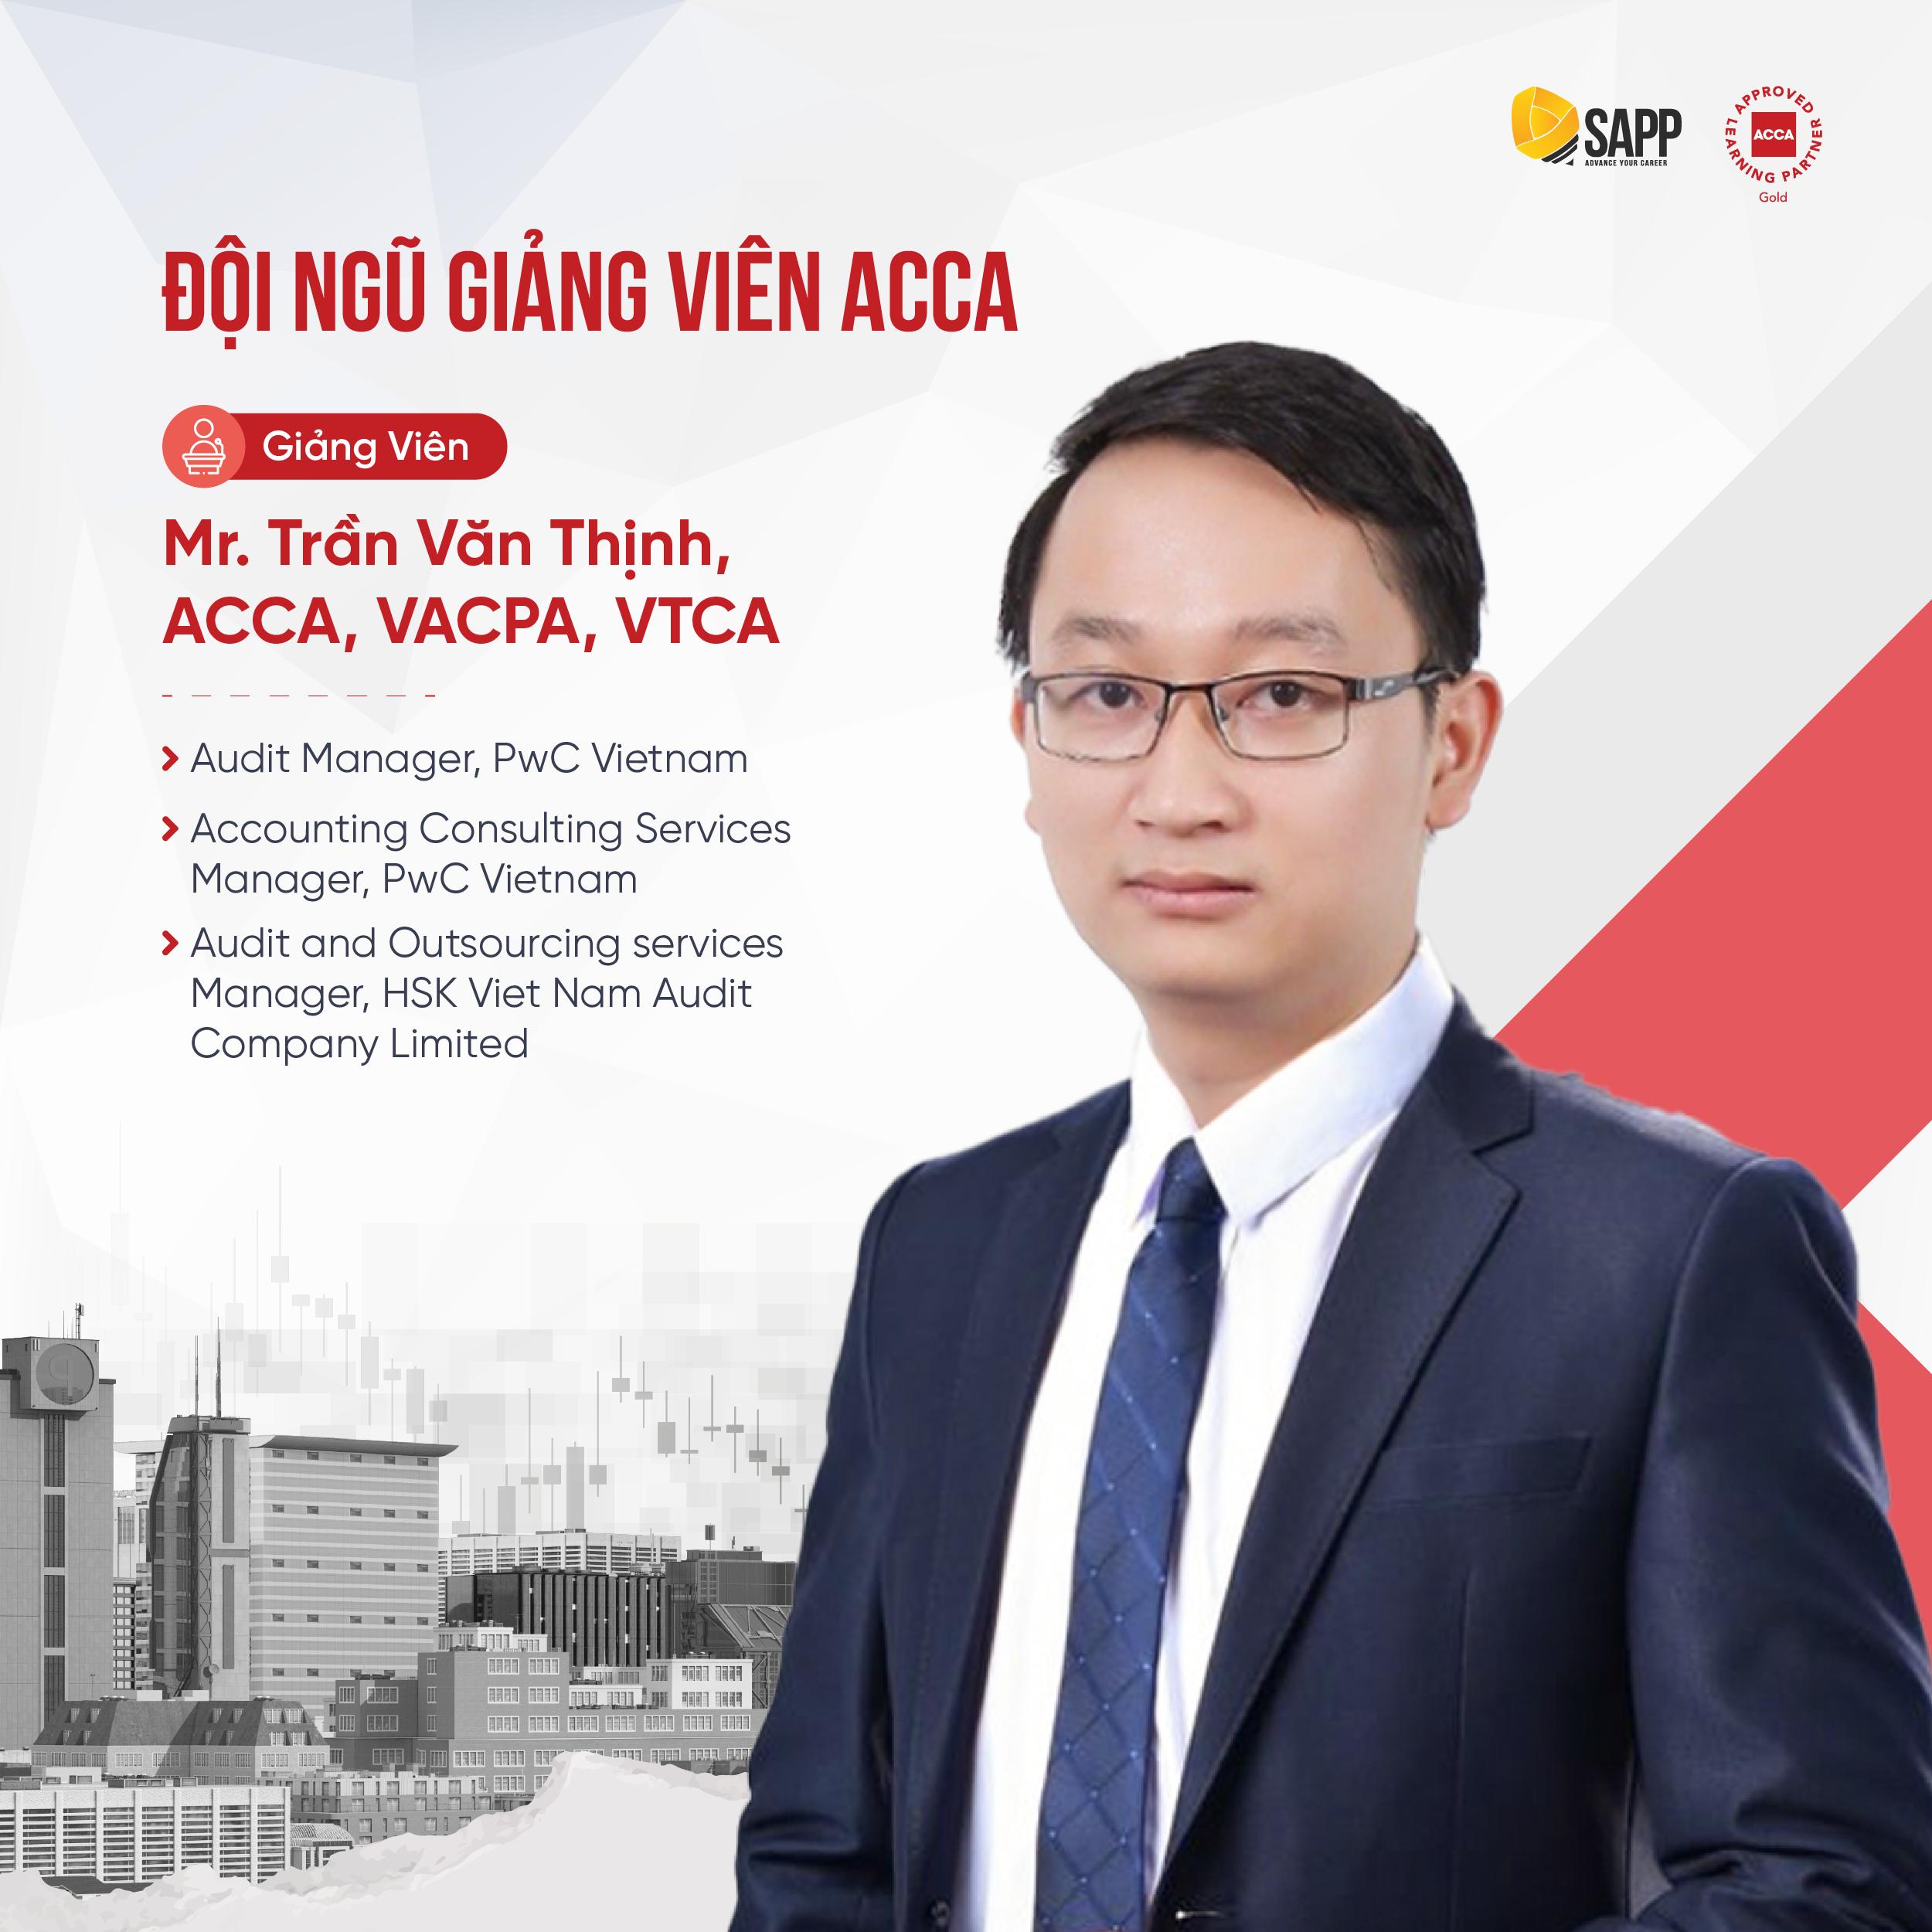 Trần Văn Thịnh, ACCA, VACPA, VTCA